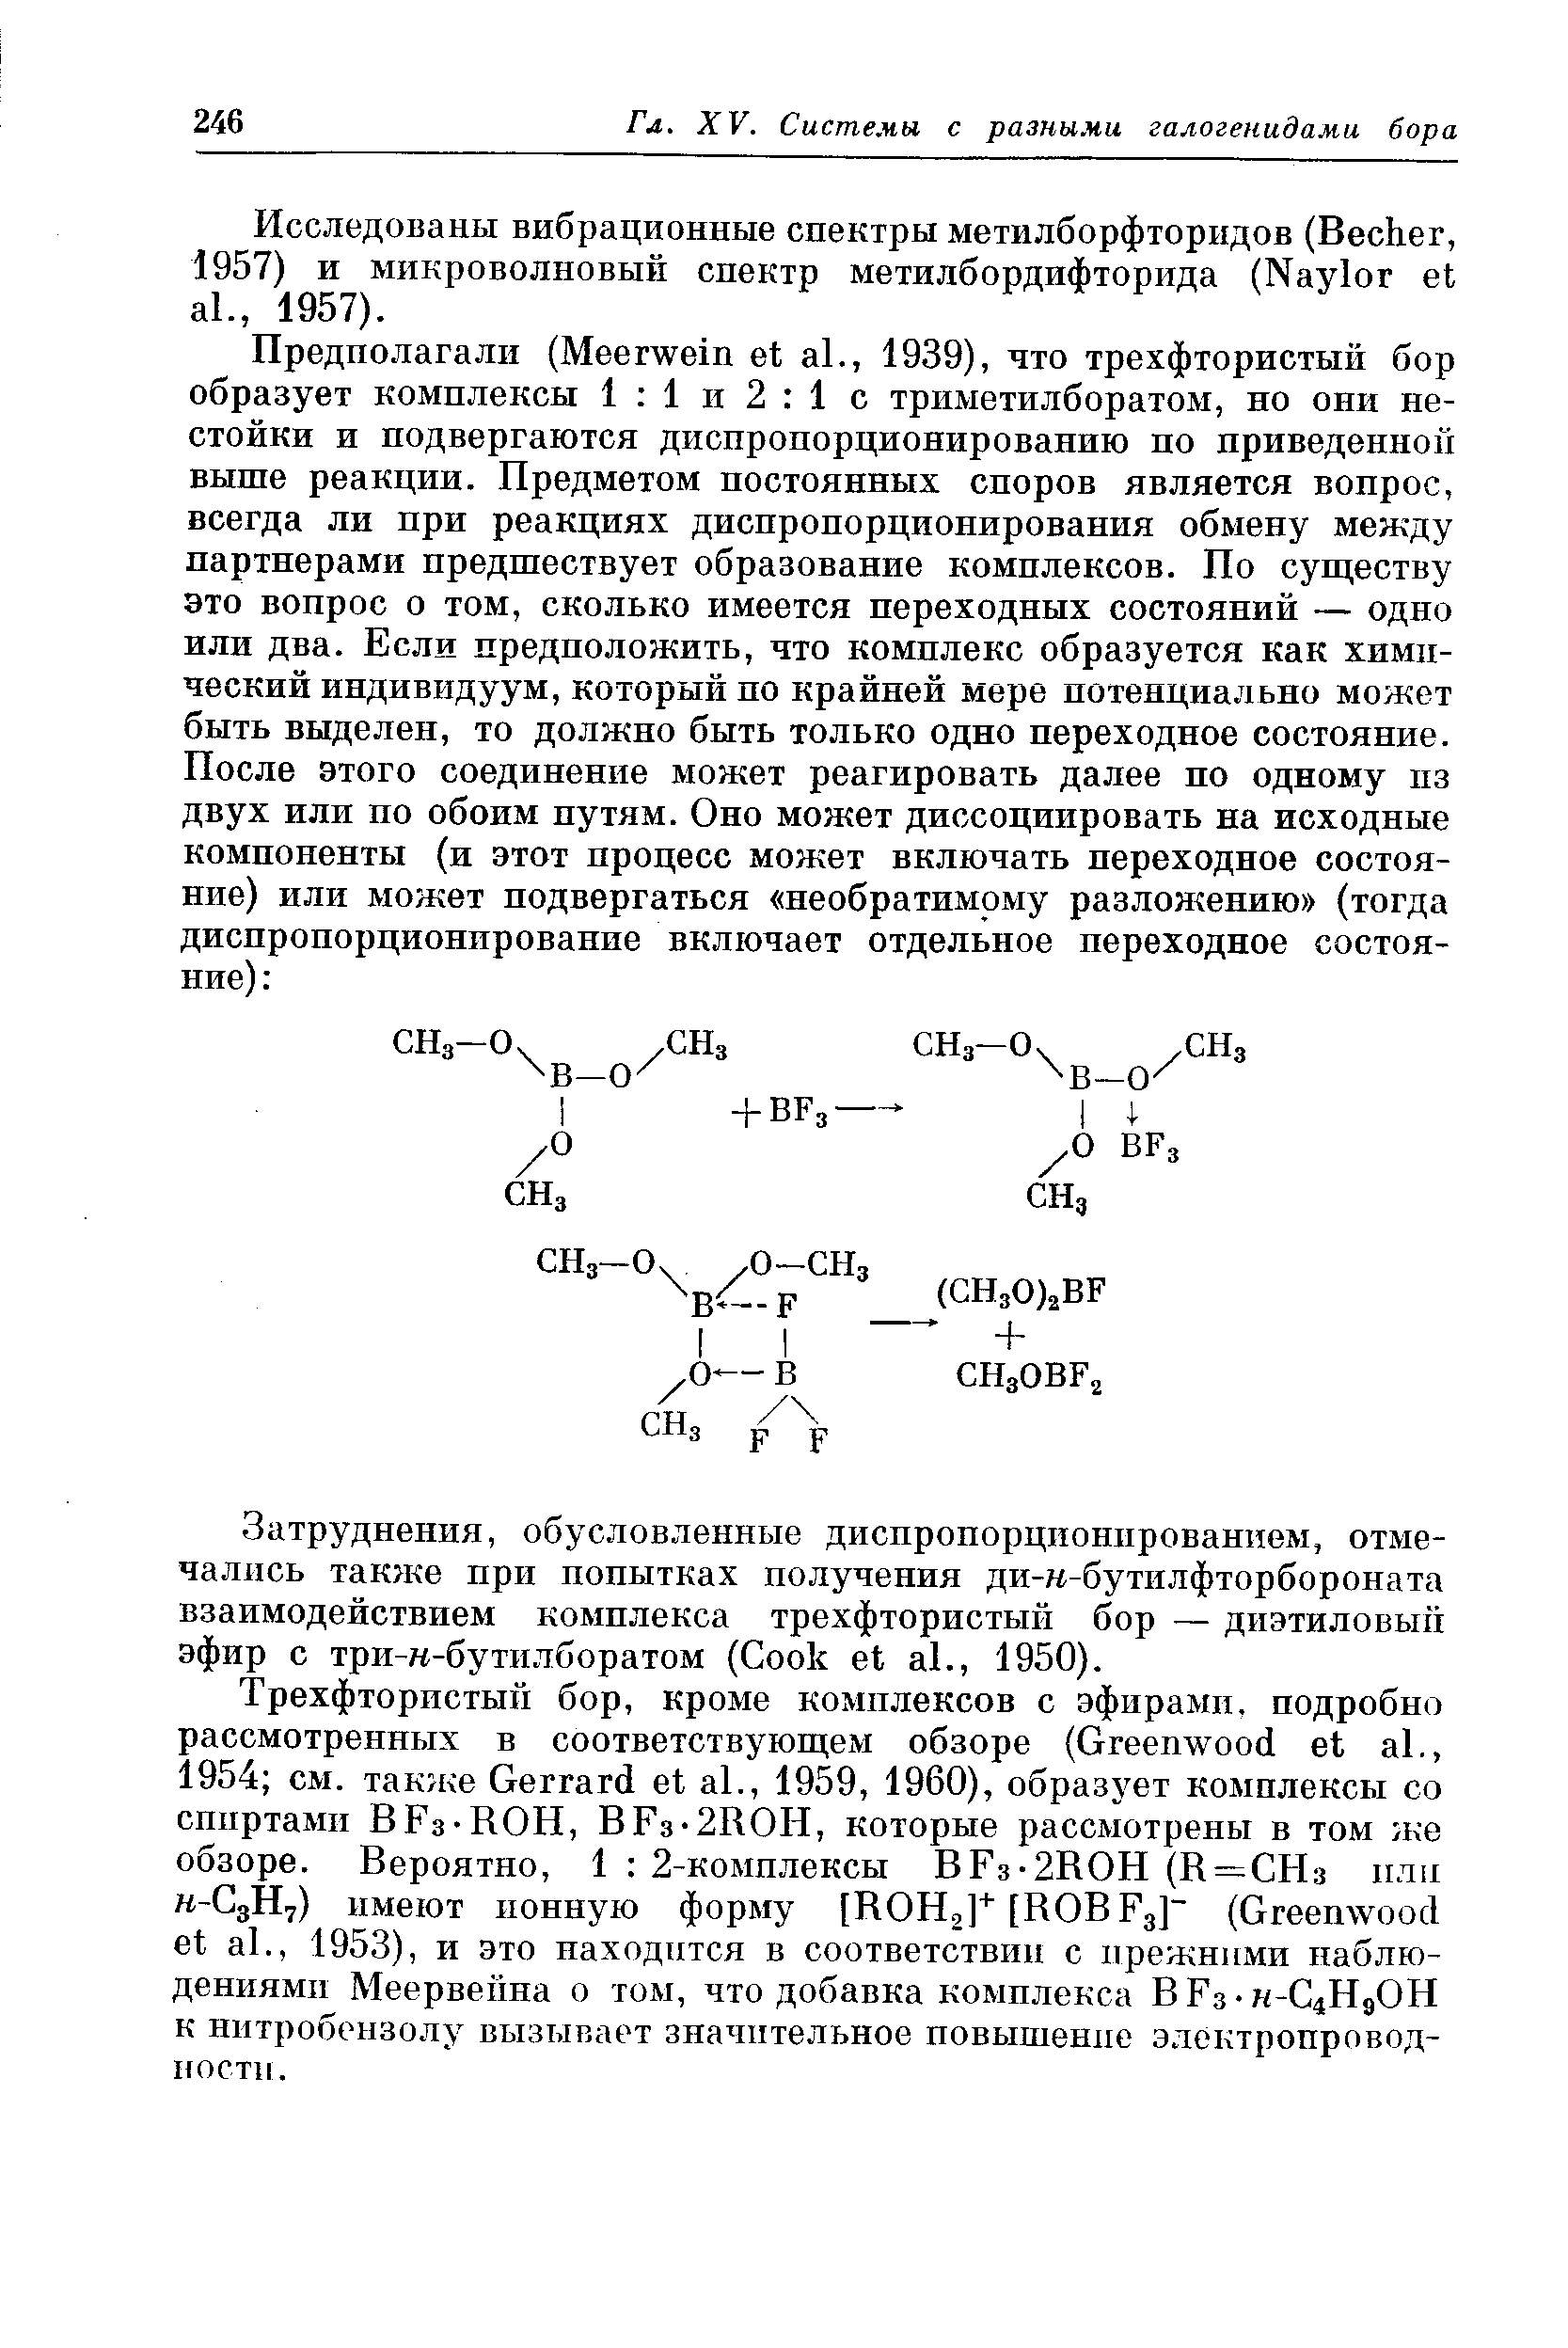 Затруднения, обусловленные диспропорционированием, отмечались также при попытках получения ди-к-бутилфторбороната взаимодействием комплекса трехфтористый бор — диэтиловый эфир с три-к-бутилборатом ( ook et al., 1950).